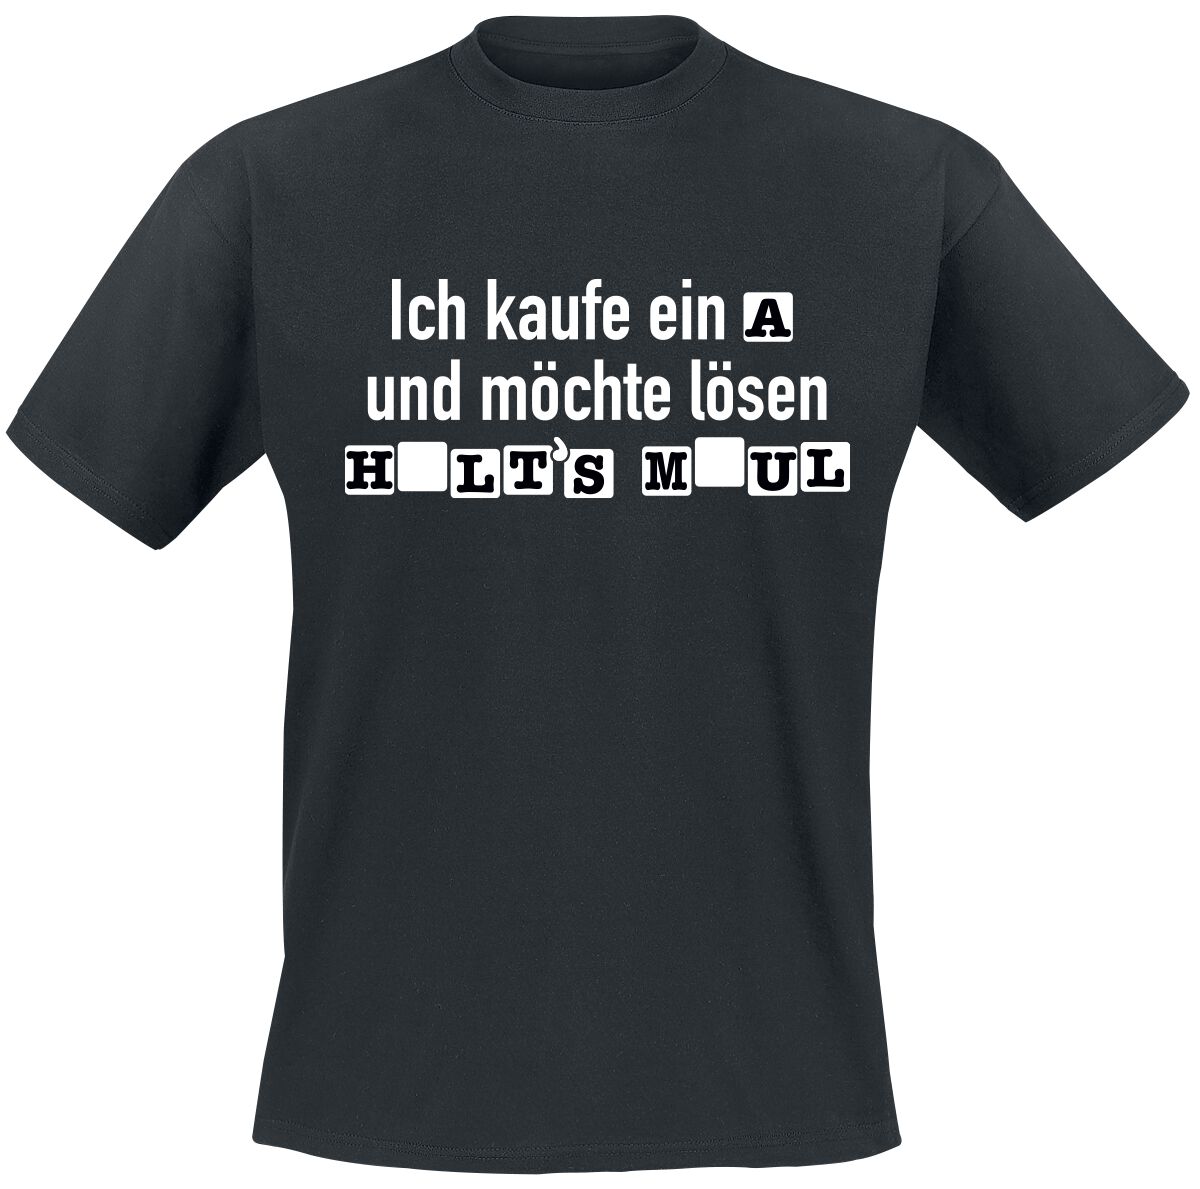 Sprüche T-Shirt - Ich kaufe ein A und möchte lösen - S bis 4XL - für Männer - Größe XL - schwarz